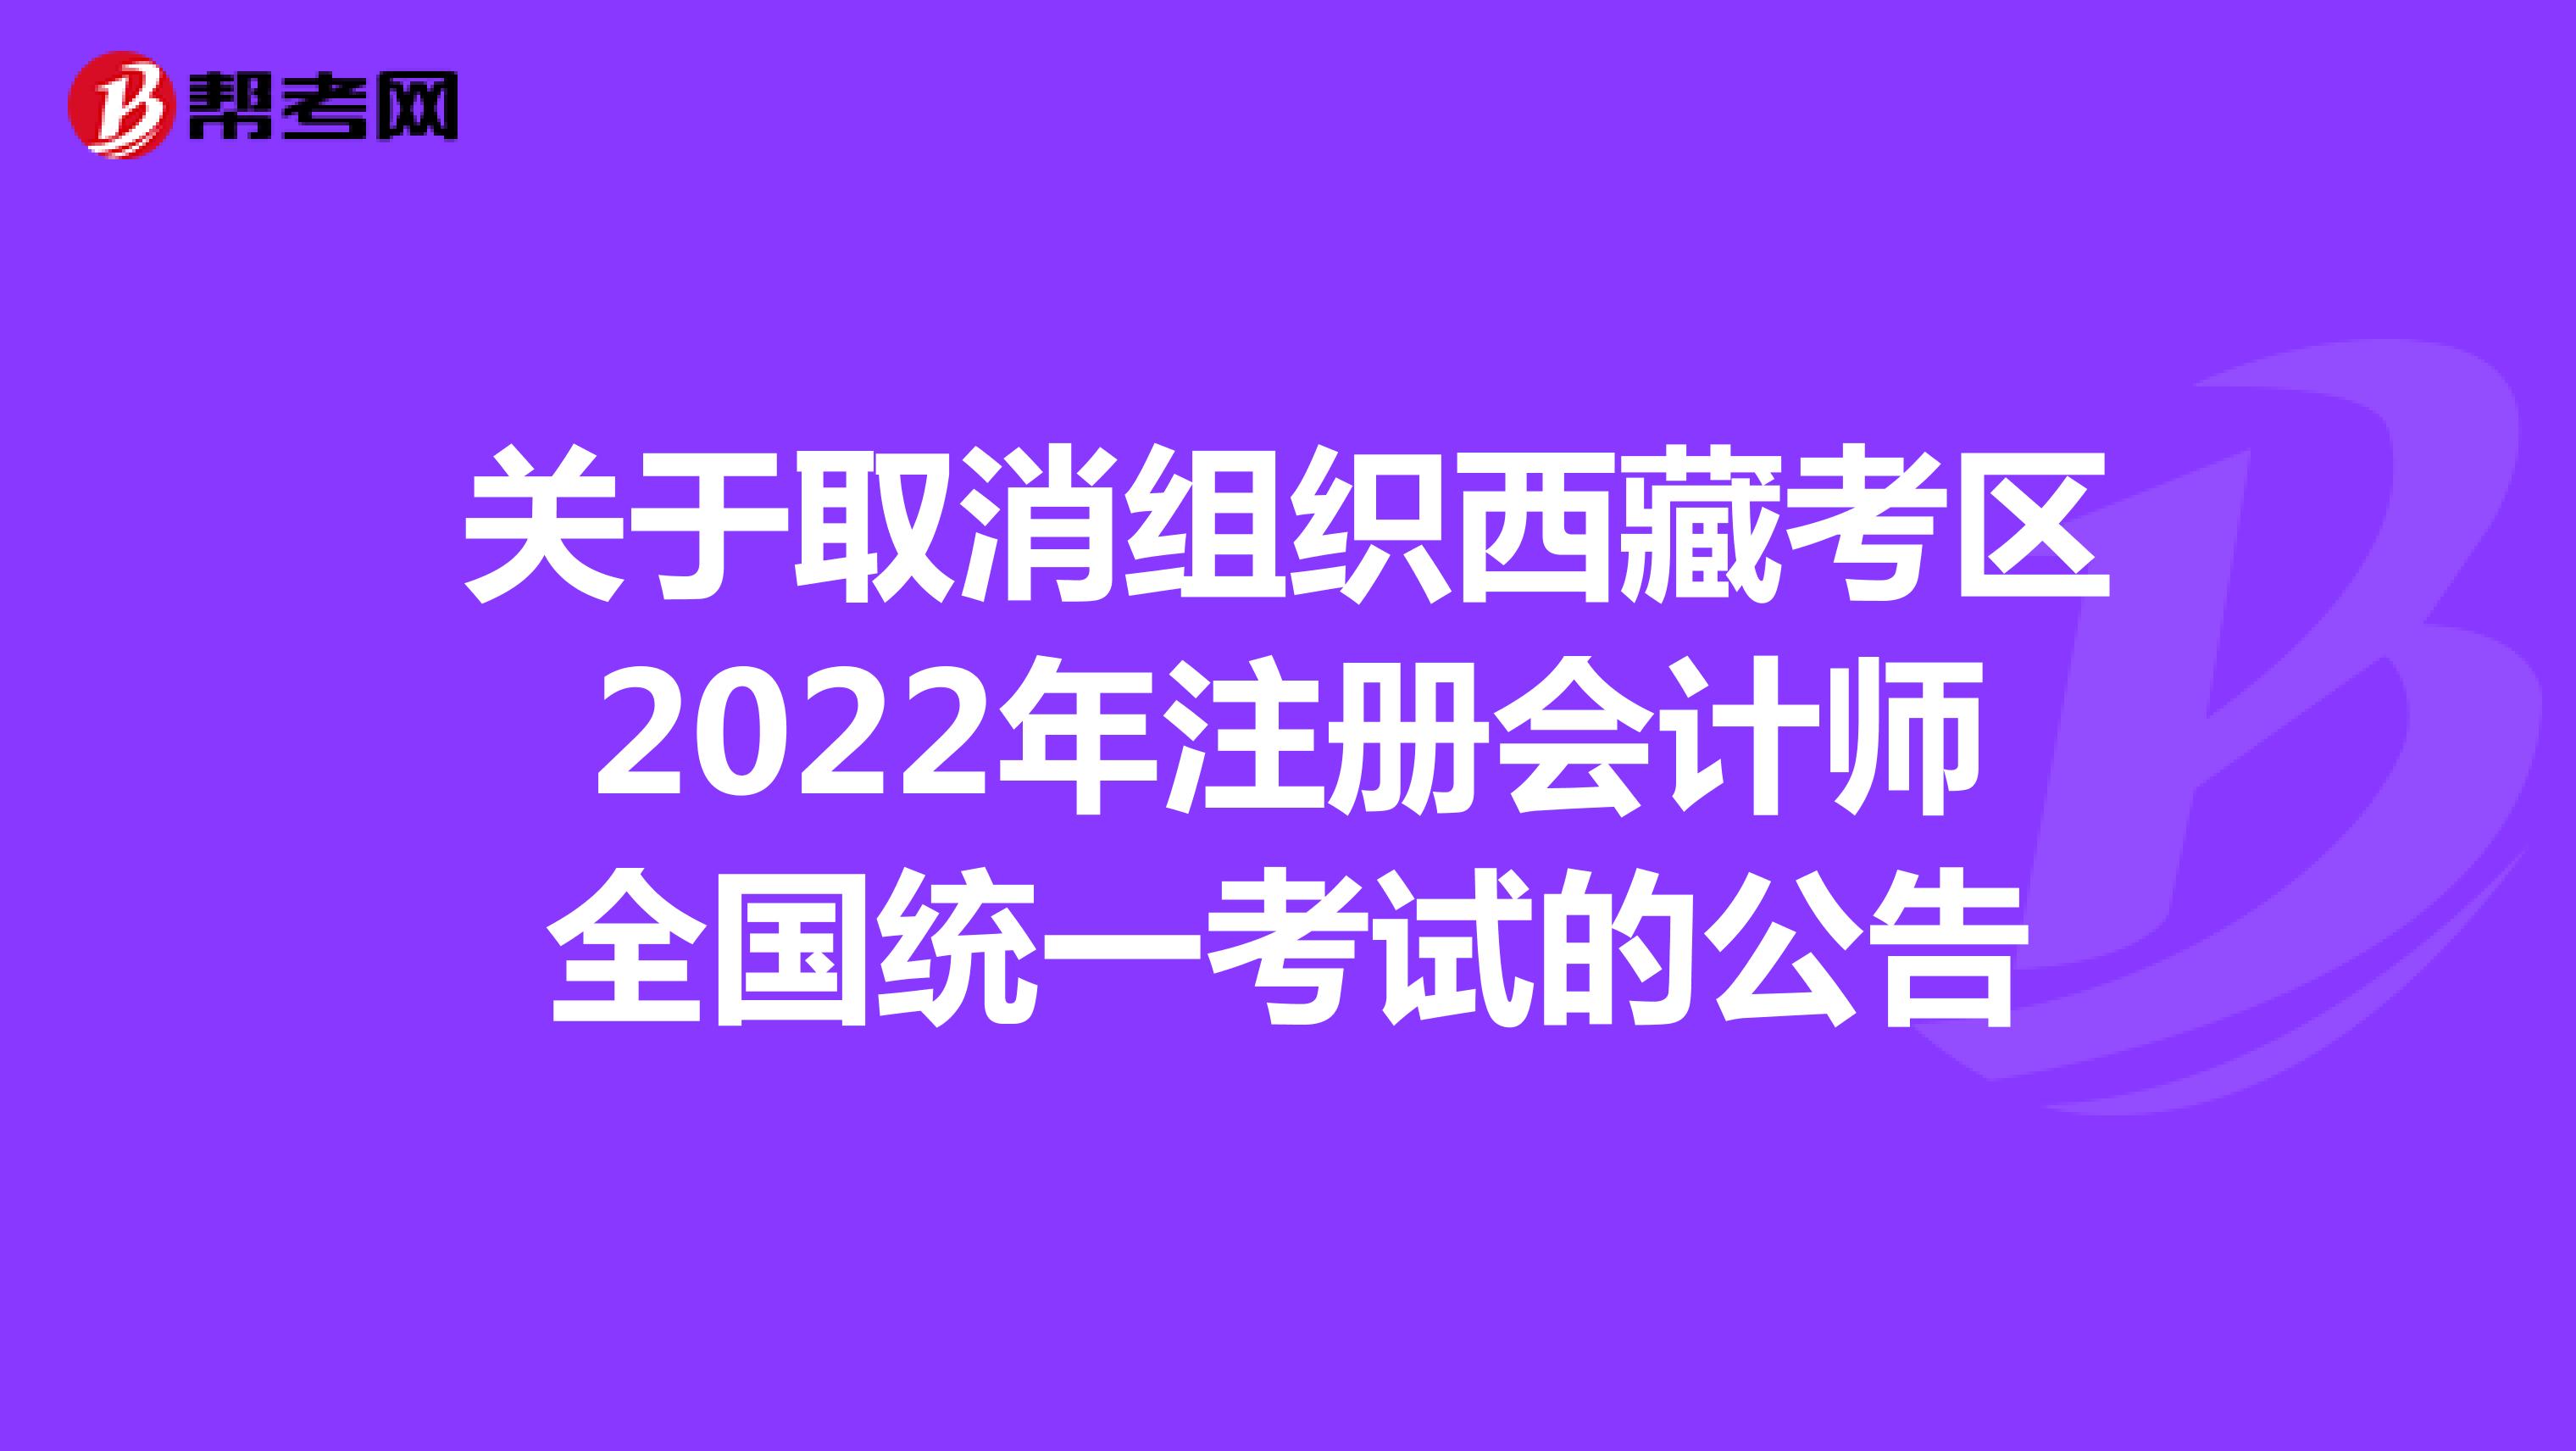 关于取消组织西藏考区2022年注册会计师全国统一考试的公告